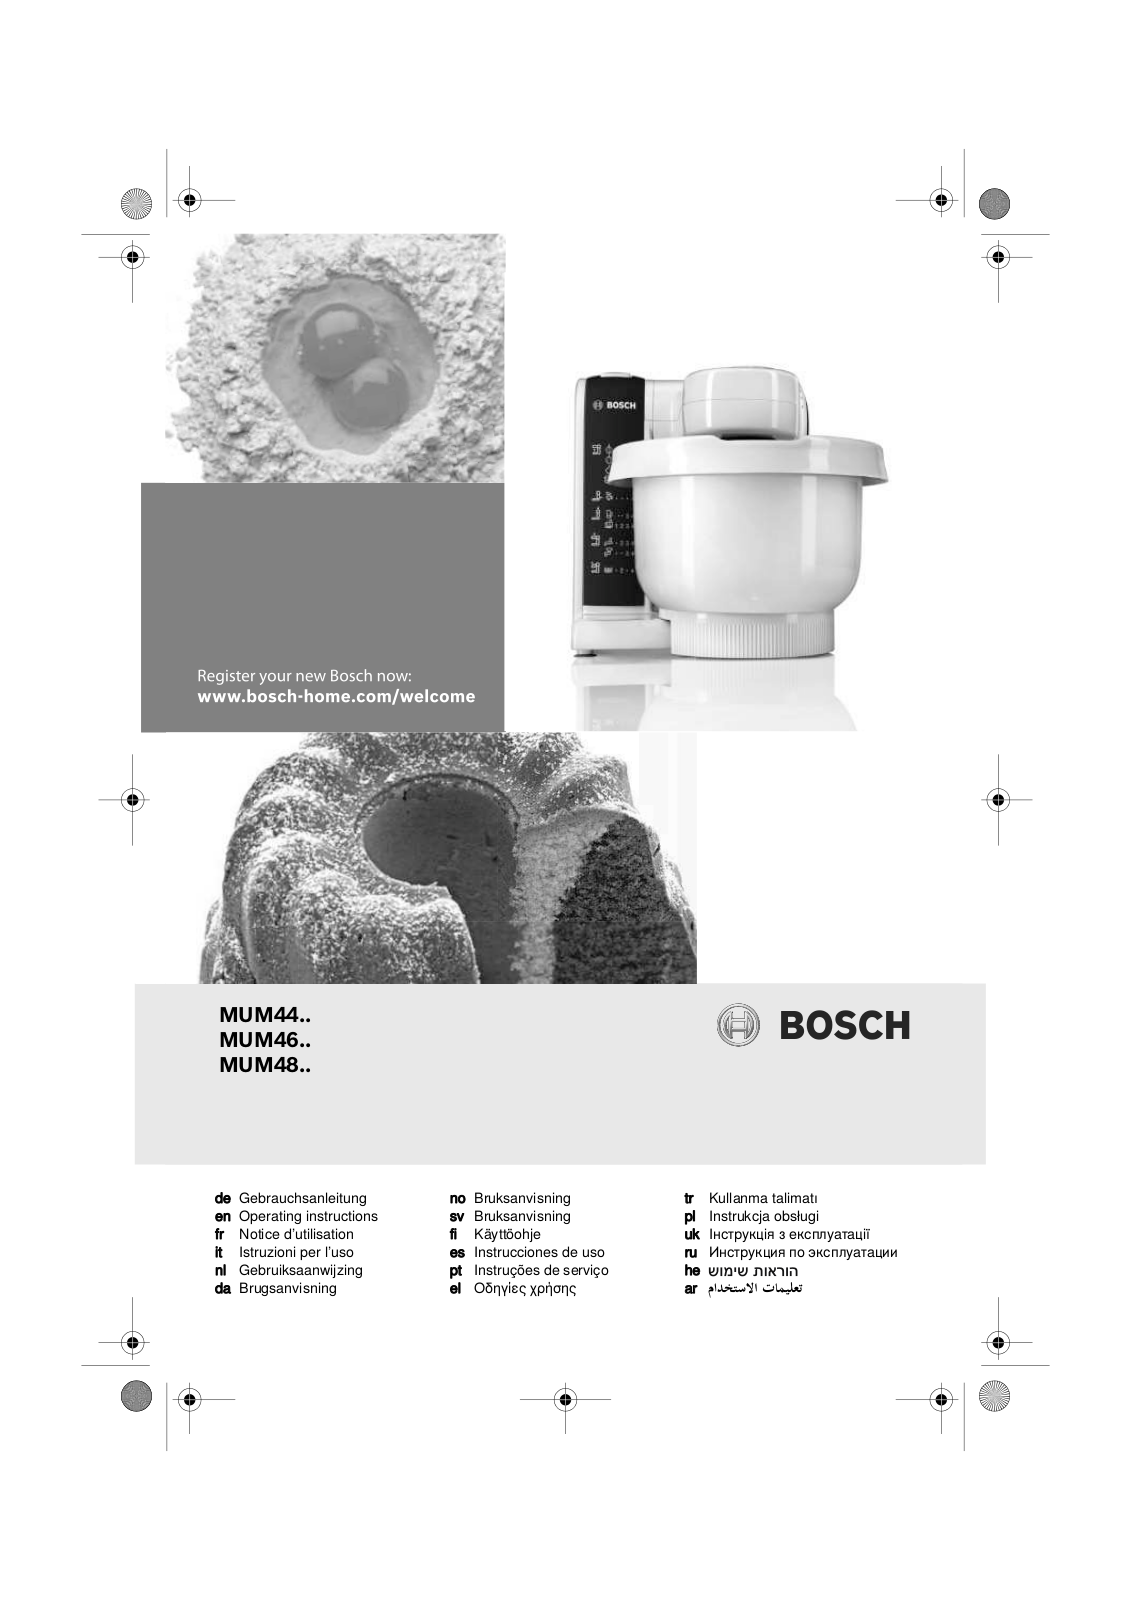 Bosch MUM44, MUM46, MUM48 Service Manual